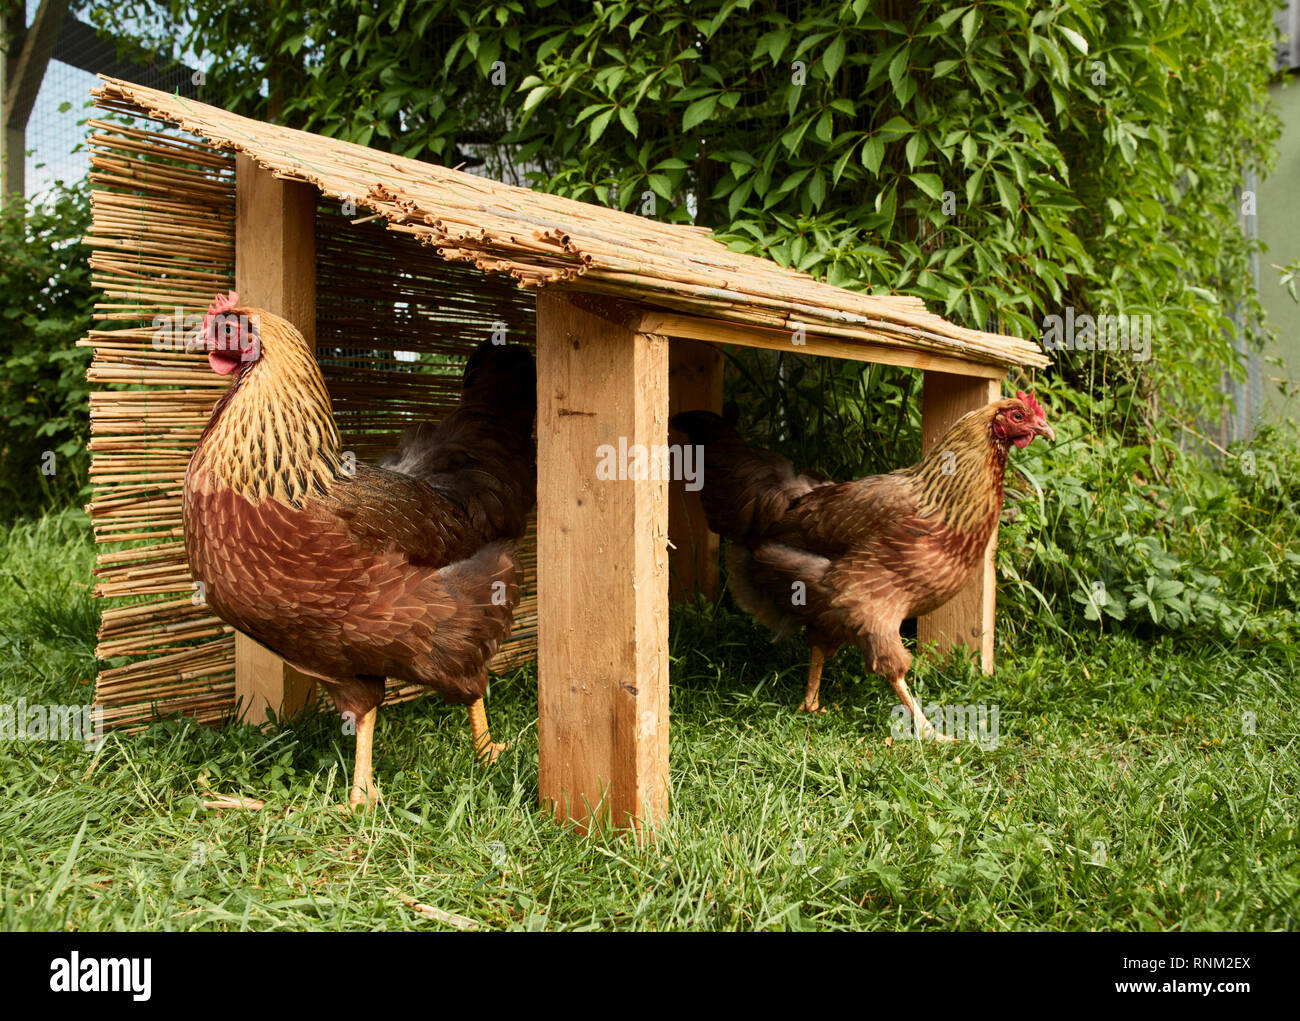 Welsummer poulet. Paire de poules dans un selfmade abri dans un jardin. Allemagne Banque D'Images